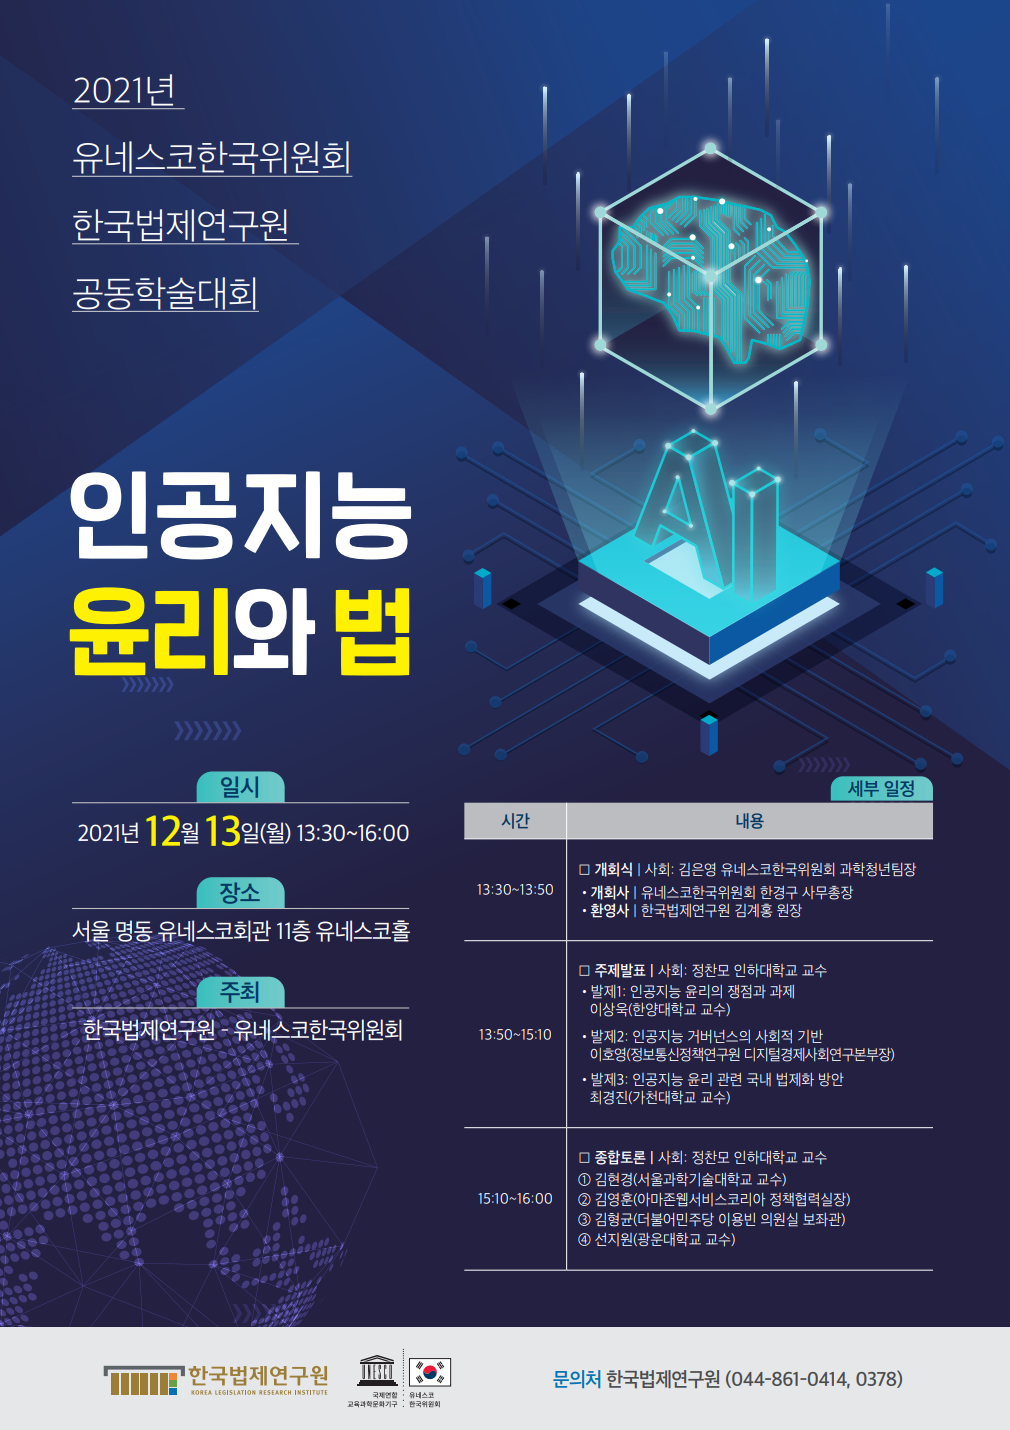 2021년 유네스코한국위원회 - 한국법제연구원 공동학술대회